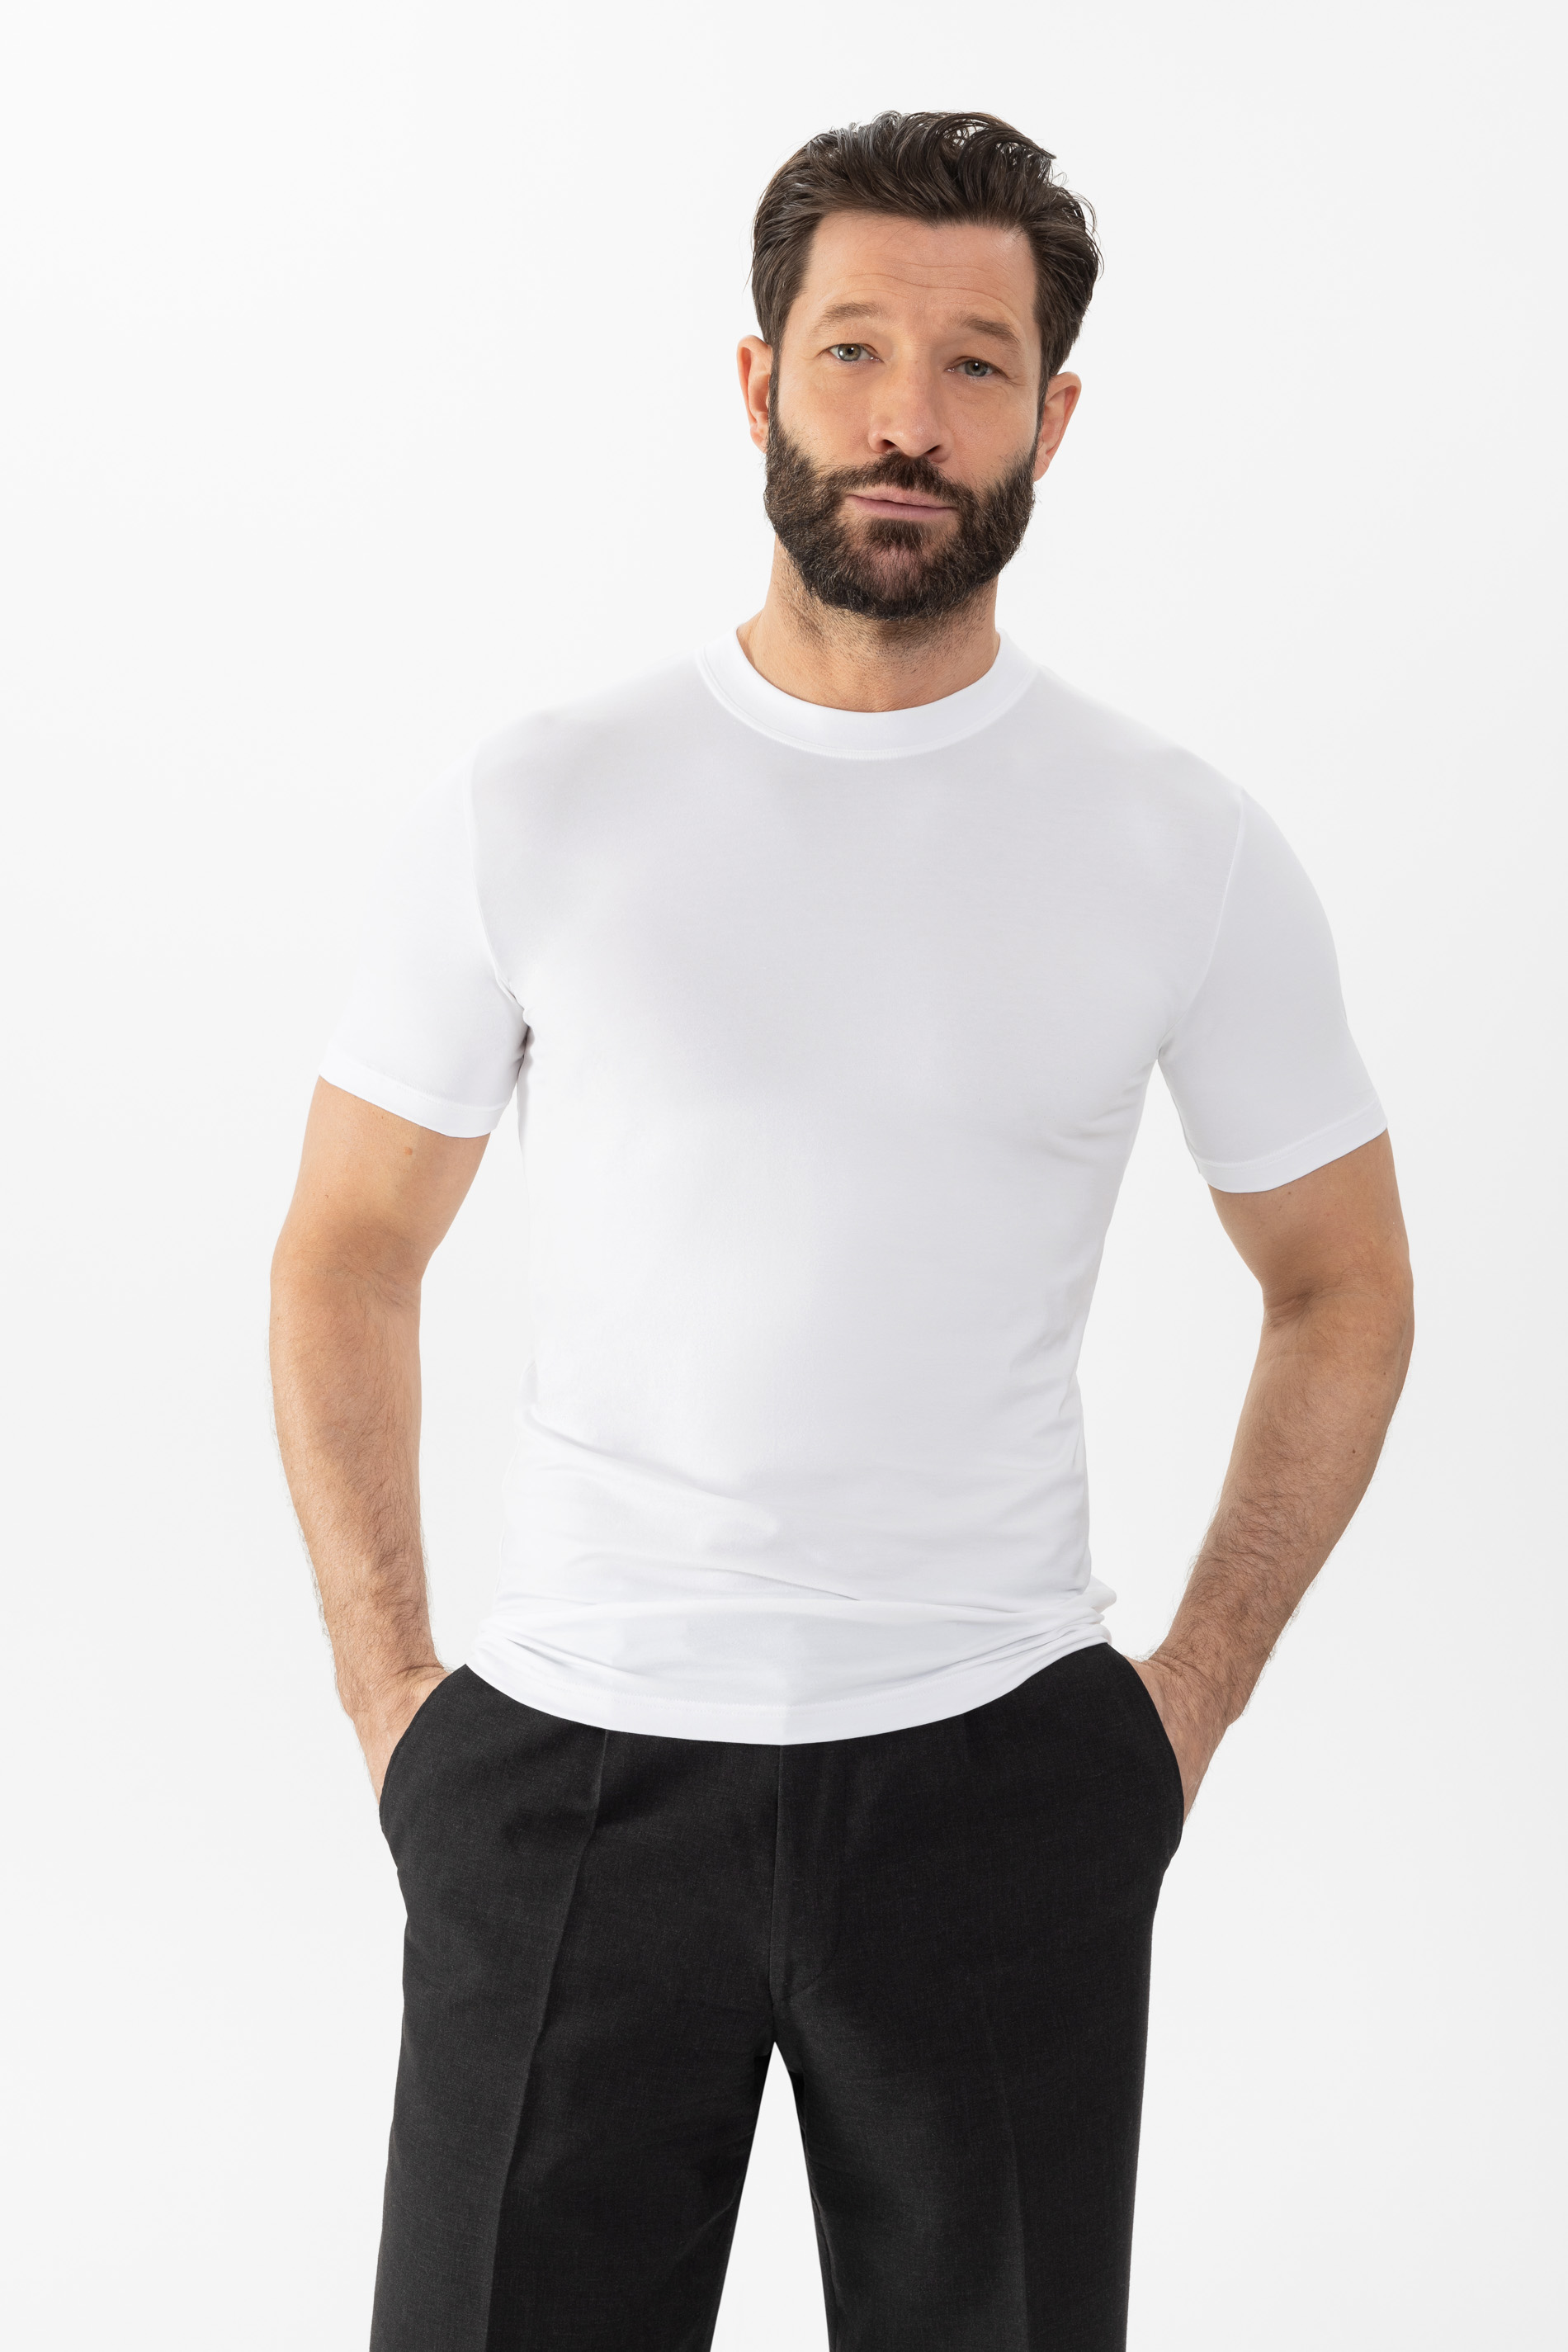 Olympic shirt White Serie Dry Cotton Festlegen | mey®